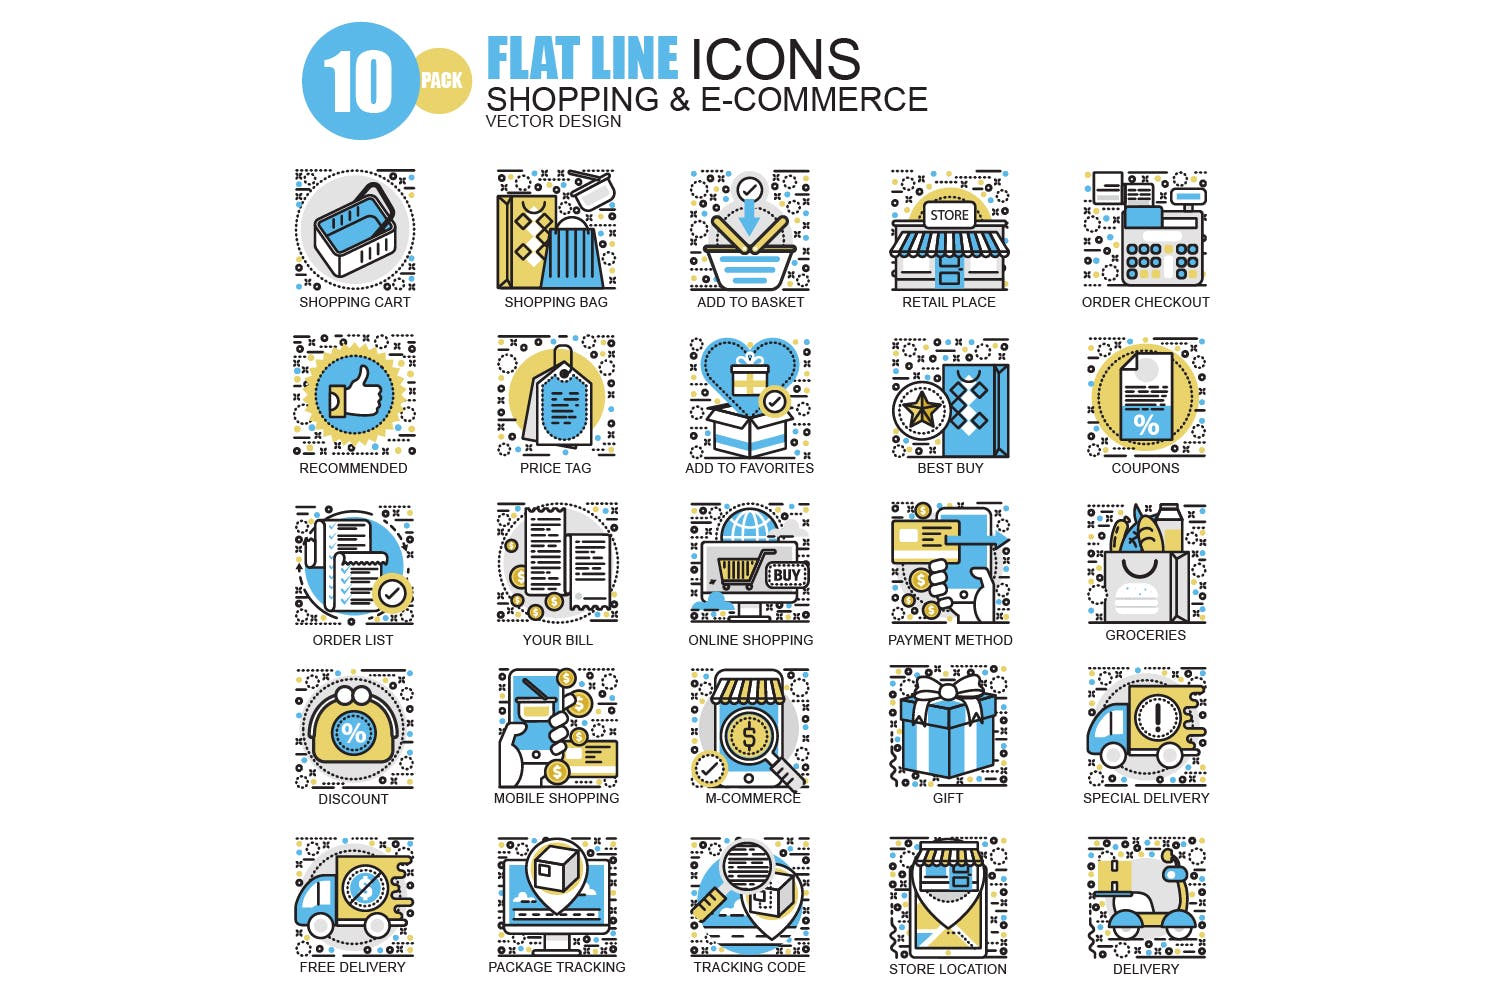 150枚概念主题扁平设计风格矢量线性图标 Line icons插图(4)